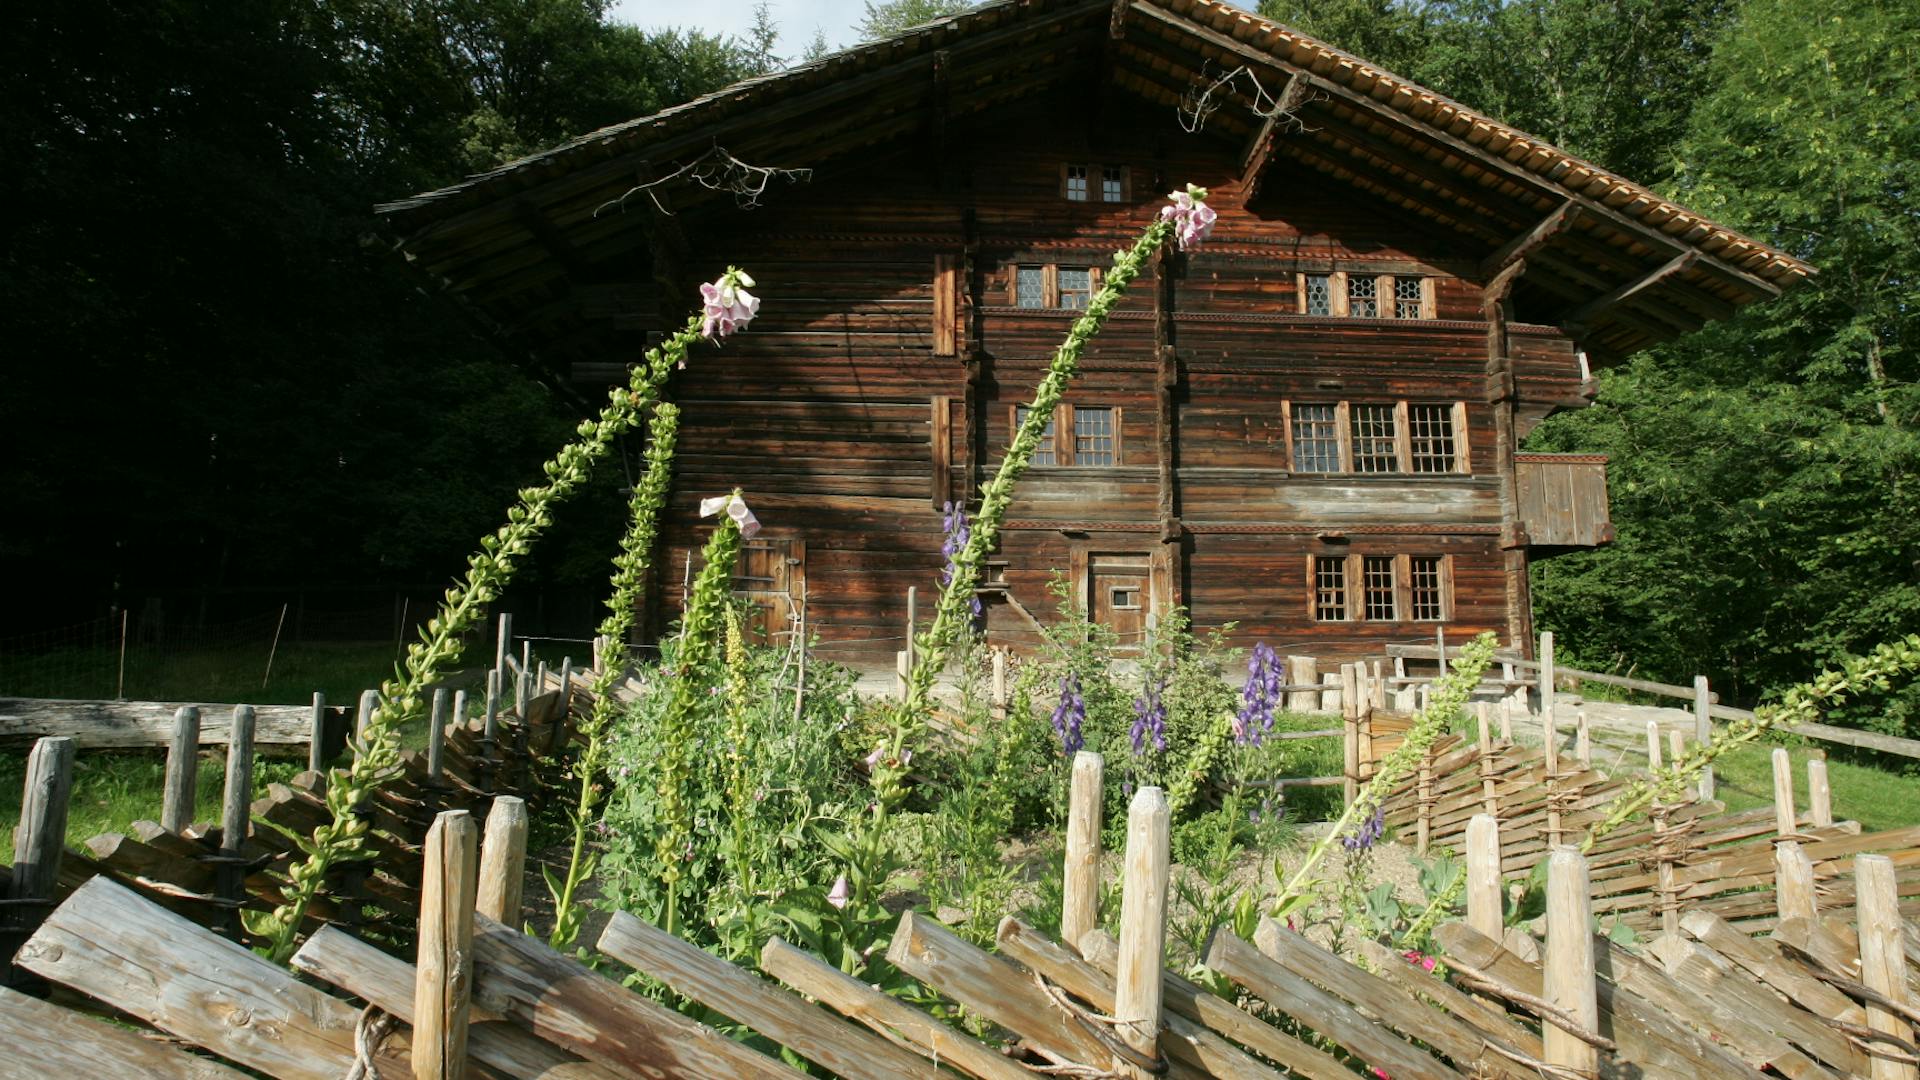 Das Bauernhaus aus Bonderlen / Adelboden BE (1011) im Freilichtmuseum Ballenberg.